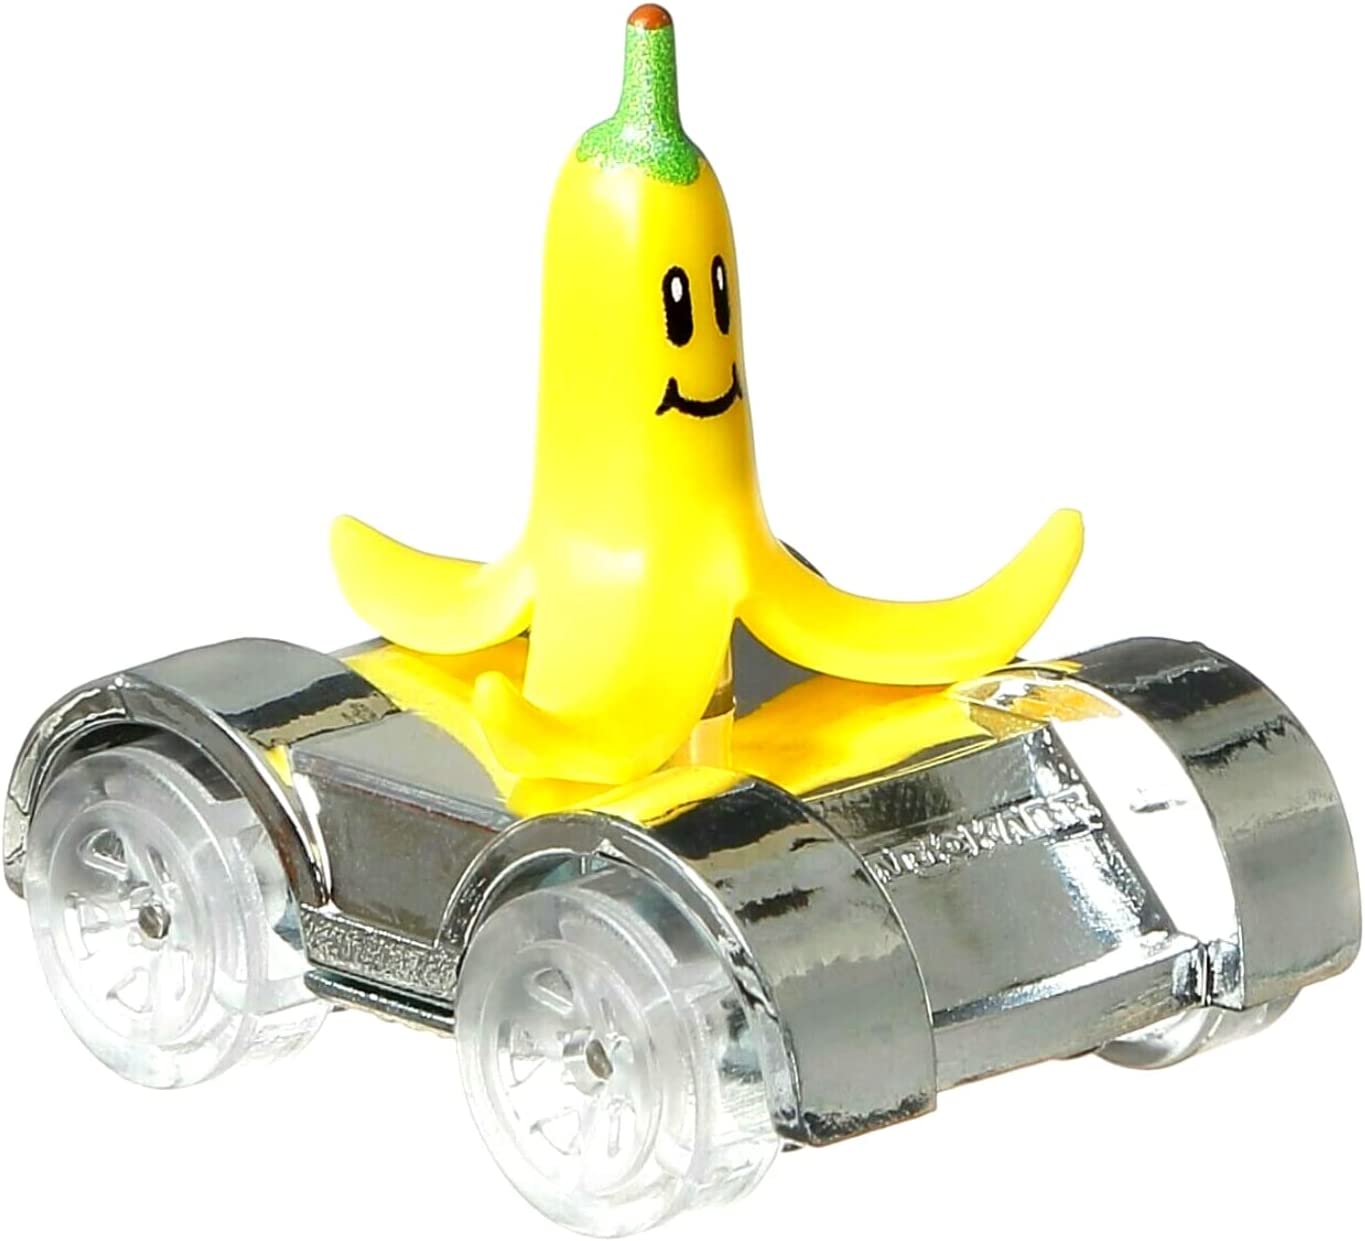 Hot Wheels Mario Kart IDENTIFIED Diecast Blind Box - Banana - Toptoys2u